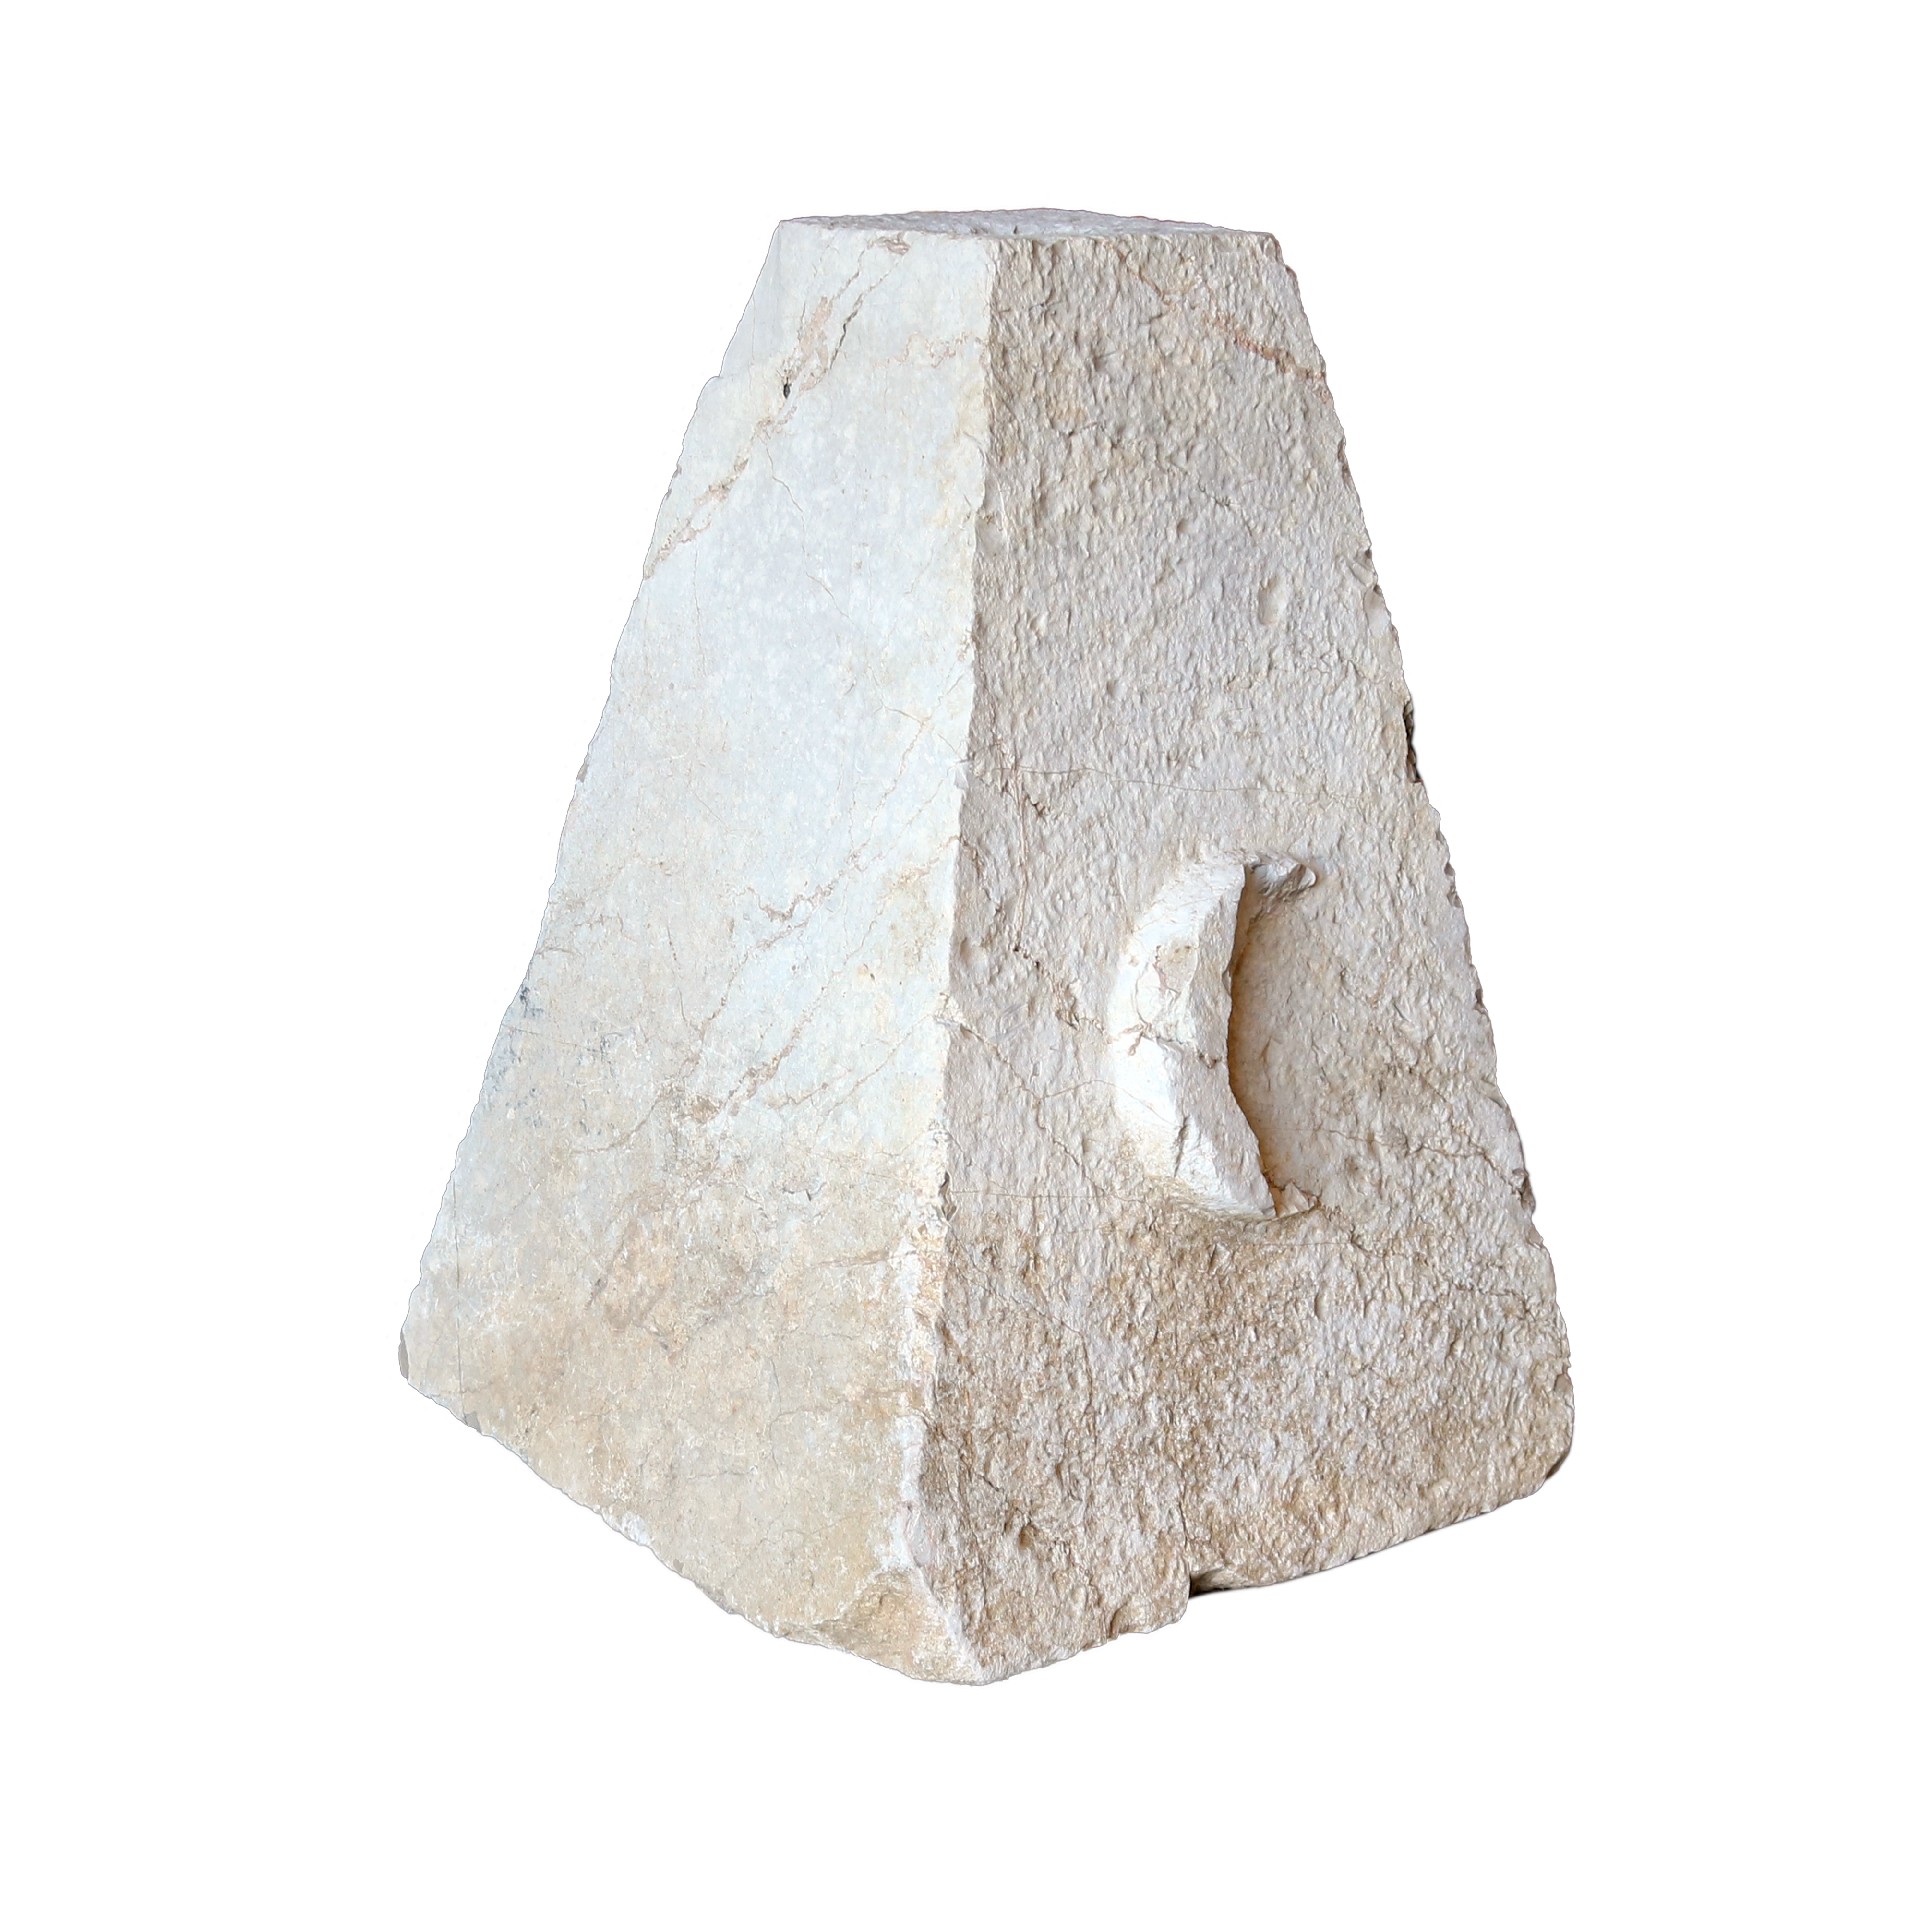 Antico puntale da colonna in pietra - Elementi Architettonici - Architettura - Prodotti - Antichità Fiorillo